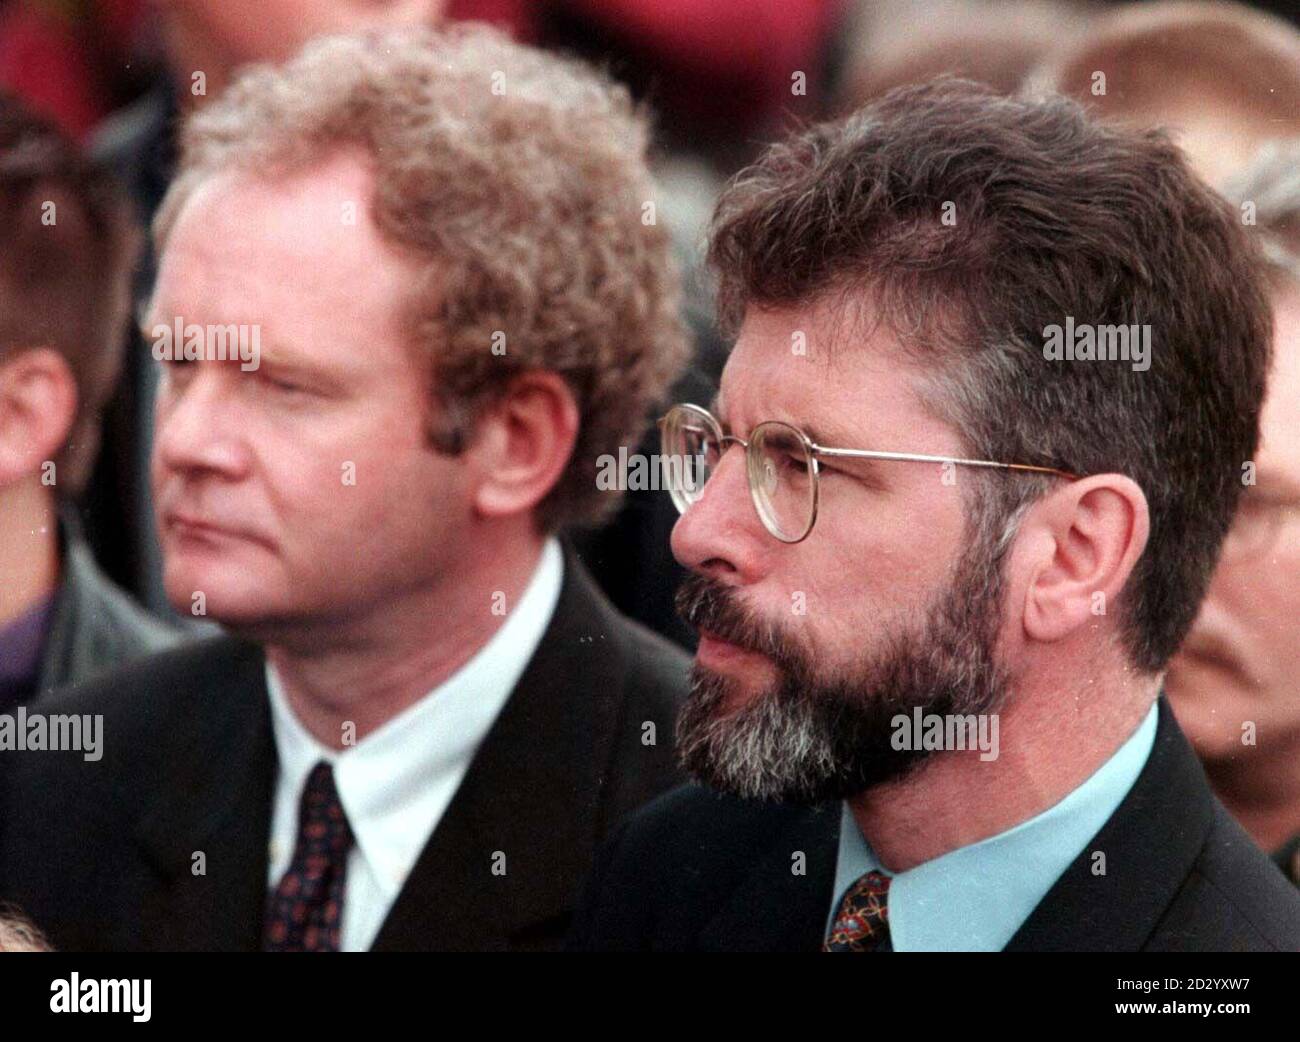 Le président de Sinn Fein, Gerry Adams (à droite) et Martin McGuinness assistent aux funérailles des trois garçons, Sean McLoughlin (12), James Barker (12) et Oran Docherty (8), tués aujourd'hui (mercredi) à l'attentat à la bombe d'Omagh, à Buncrana, à Donegal. PHOTO PA. Voir l'histoire de PA ULSTER Blast Funeral. Banque D'Images